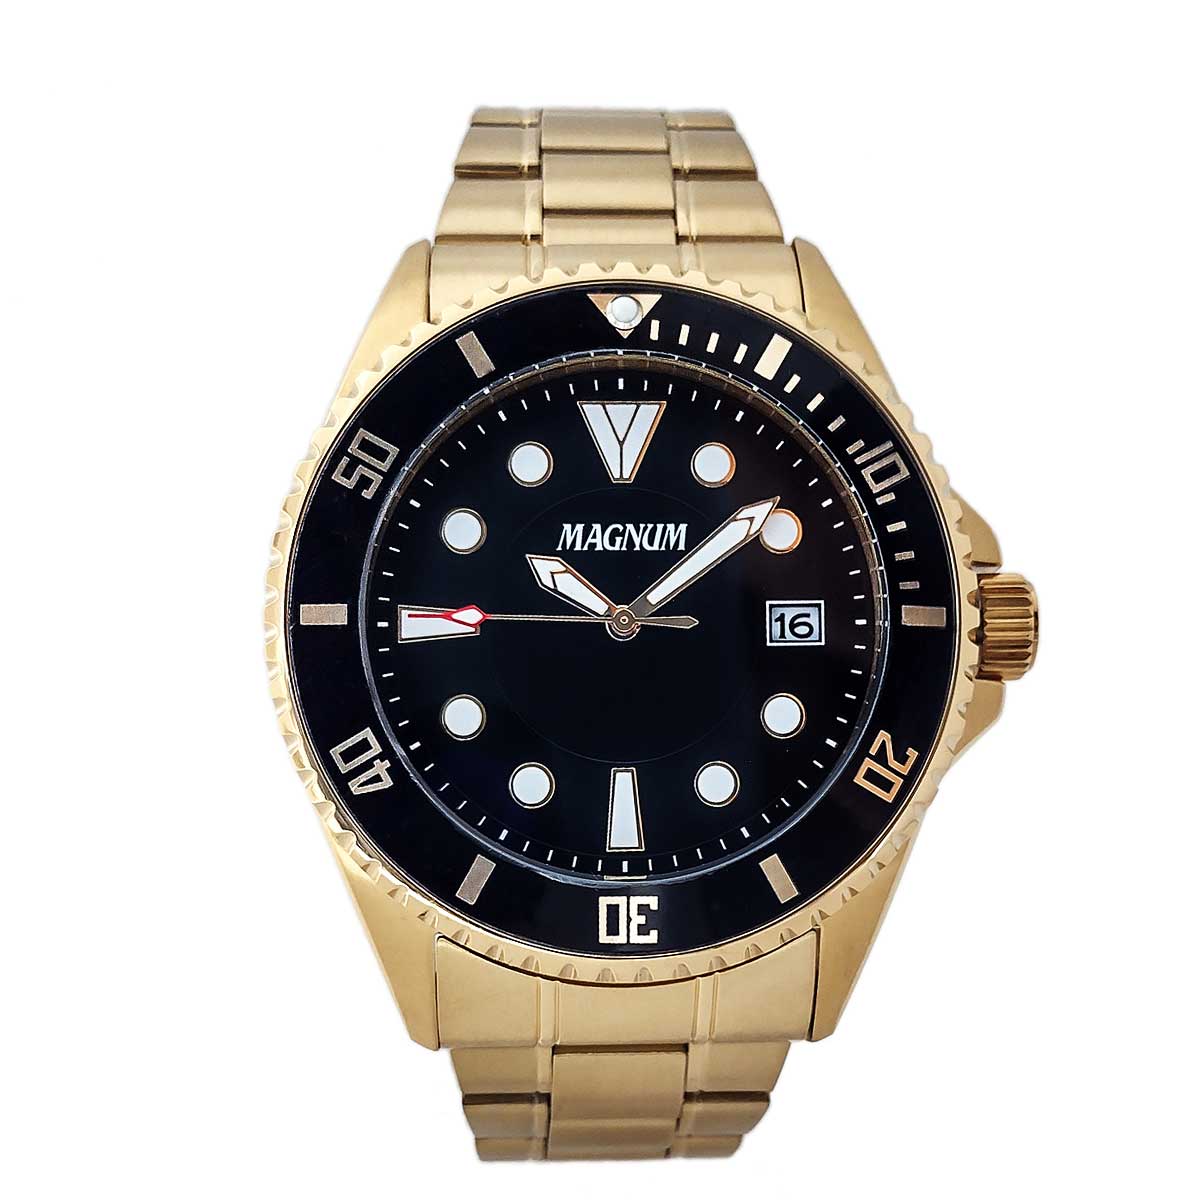 Relógio Magnum Masculino Dourado Ma33013h, relógio magnum dourado